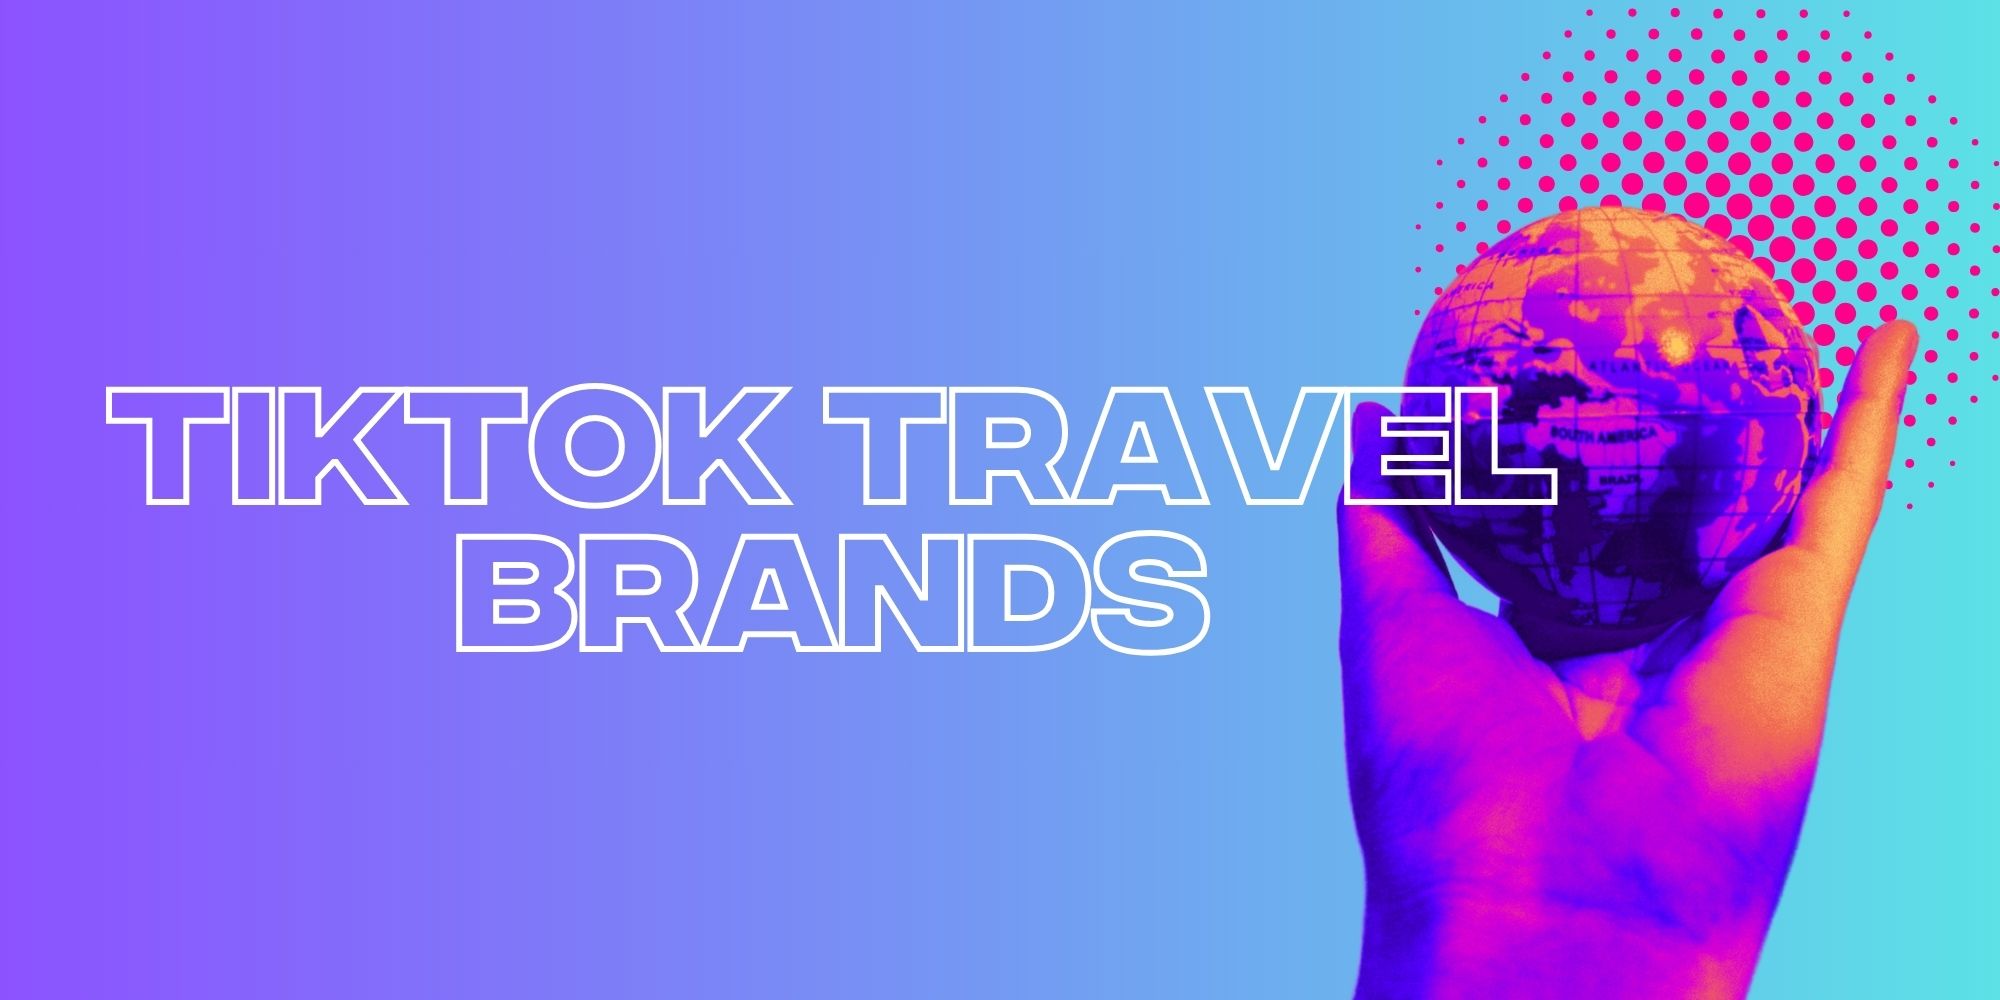 The Travel Brands Flying High On TikTok